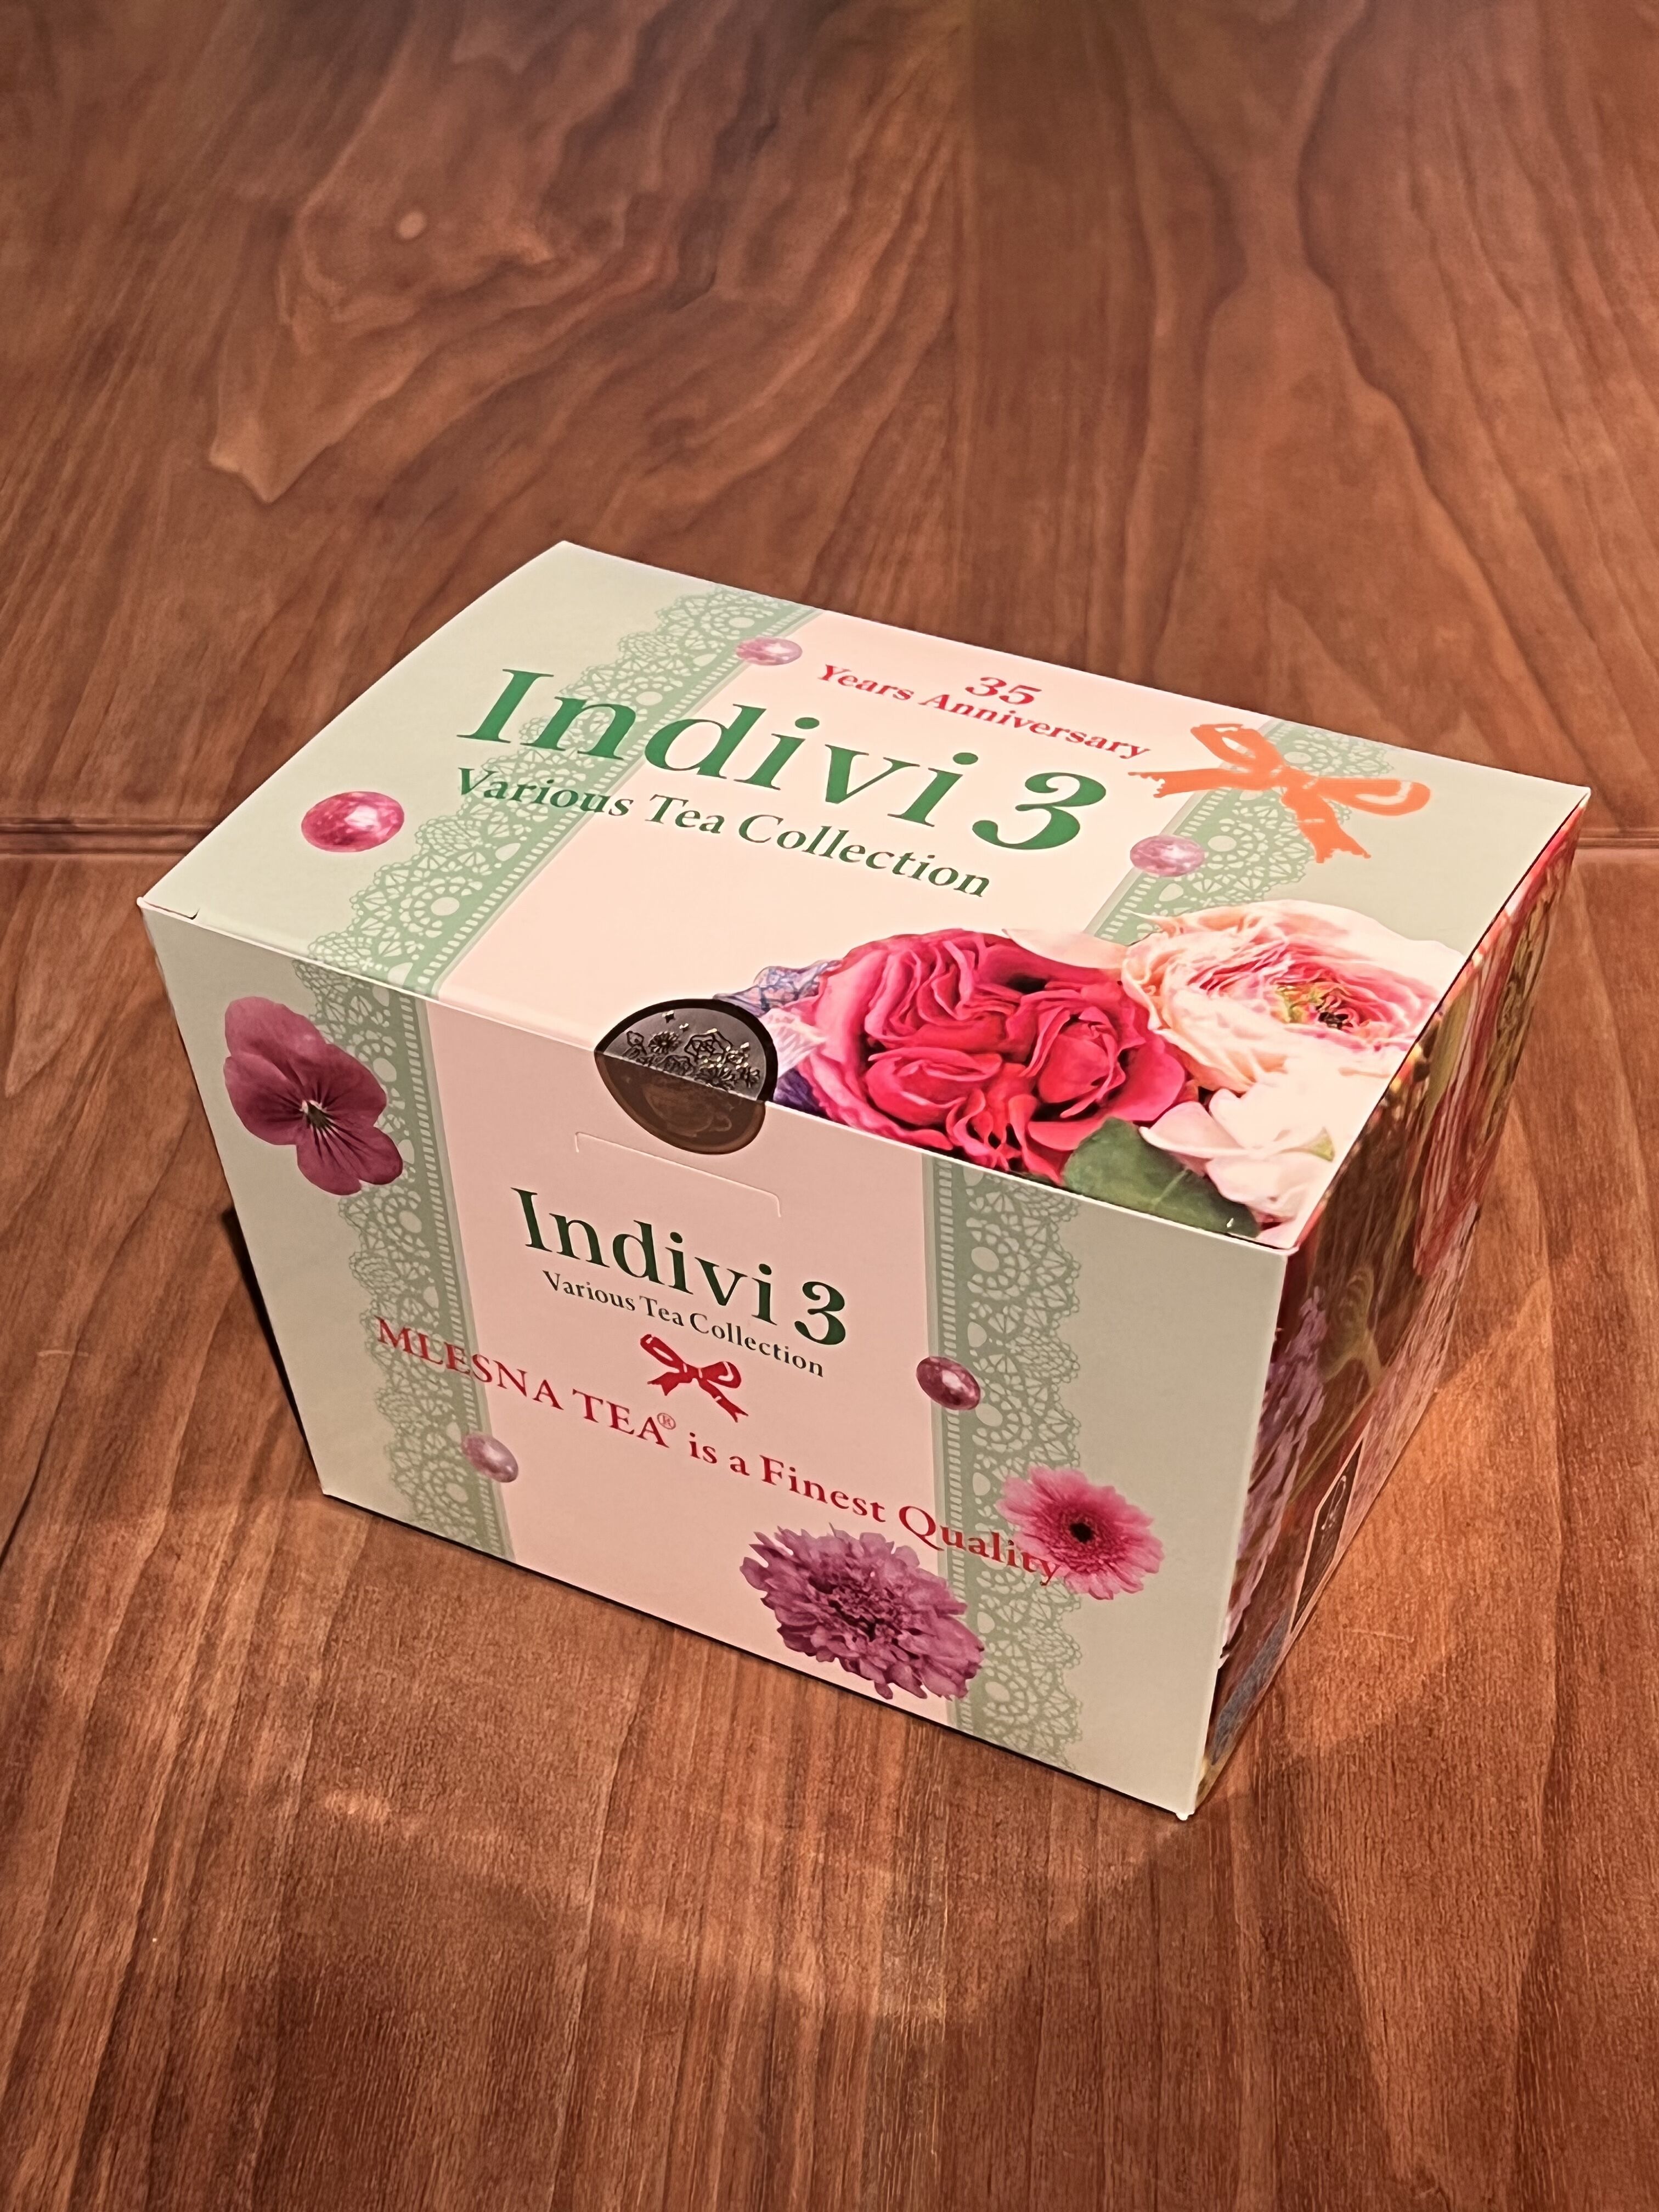 紅茶 ムレスナティー INDIVI 3 ムレスナティー16種類詰め合わせボックス